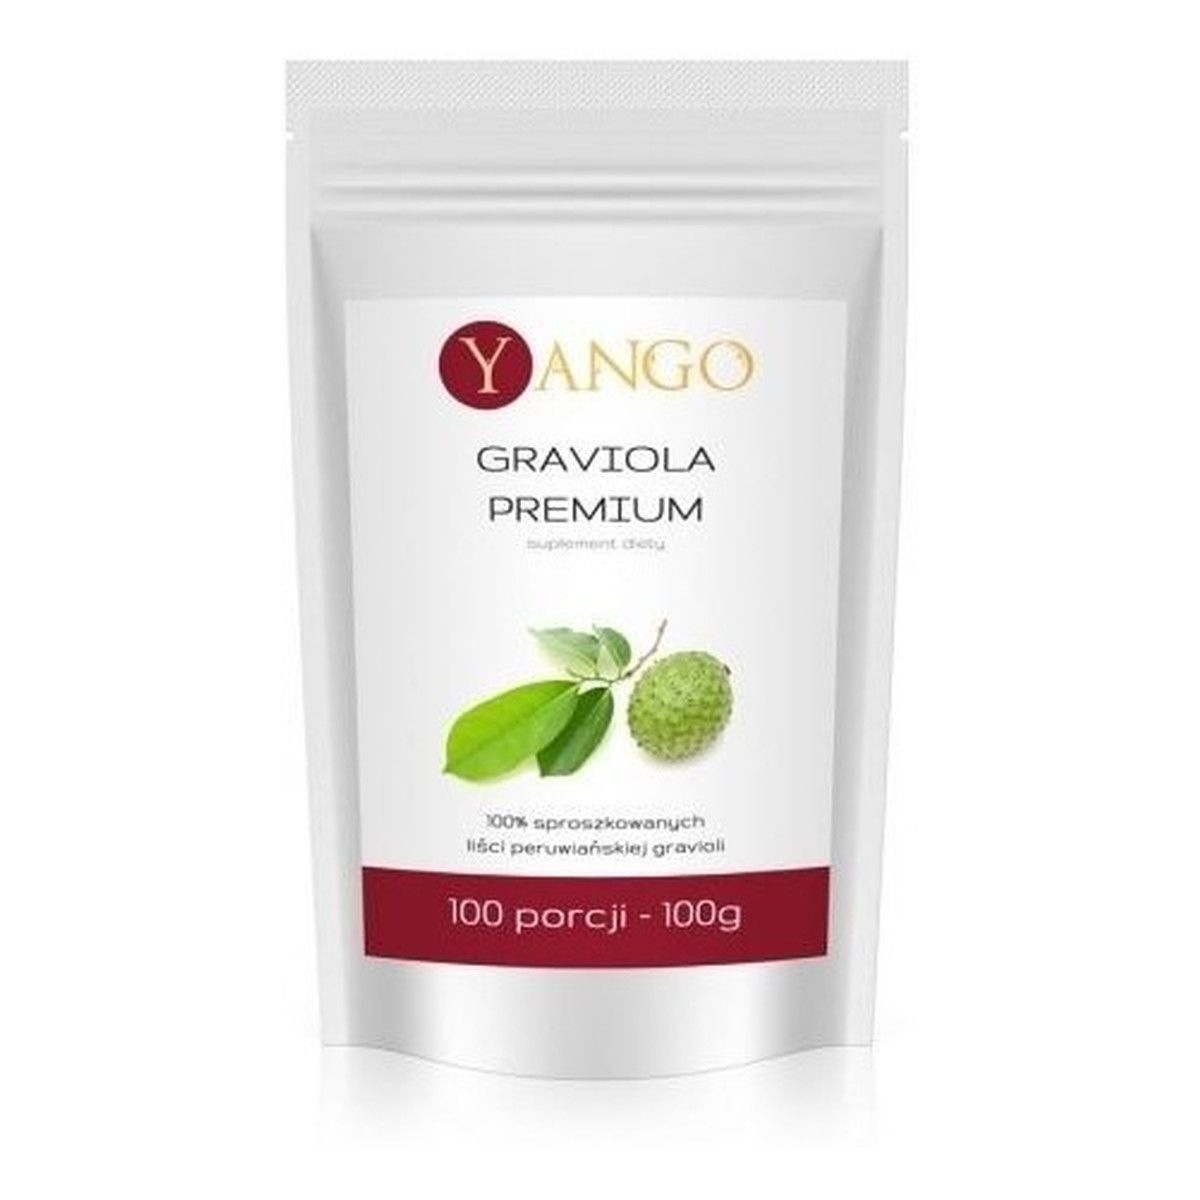 Yango Graviola Premium 100% sproszkowanych liści peruwiańskiej gravioli 100g